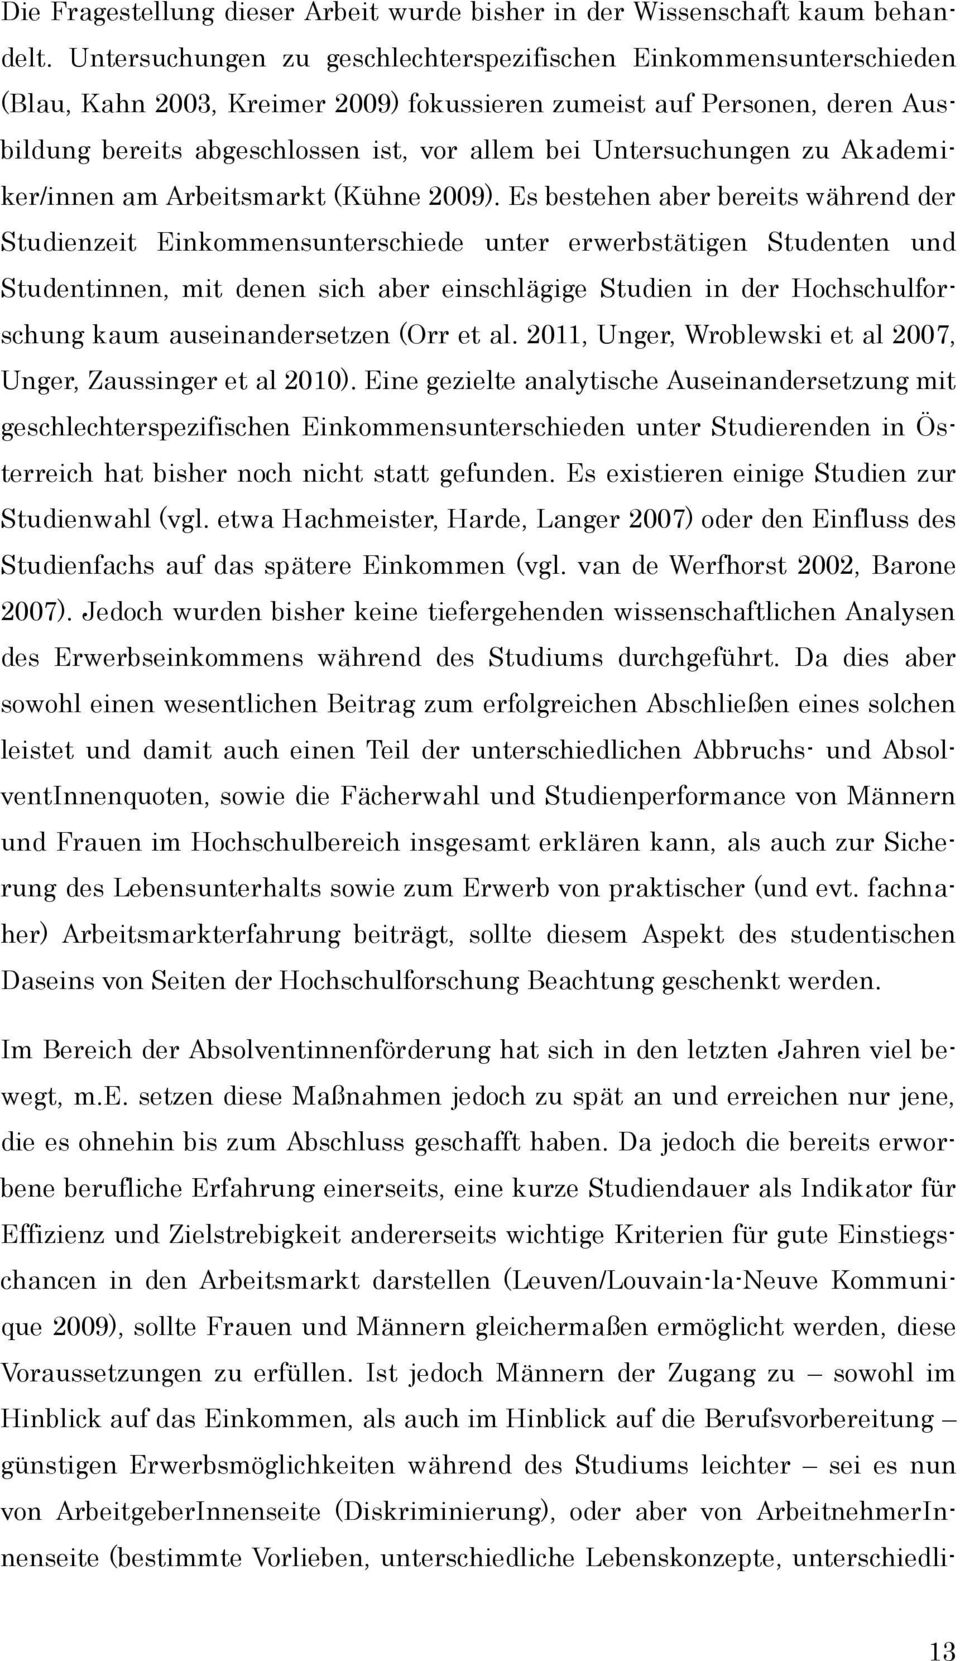 Untersuchungen zu Akademiker/innen am Arbeitsmarkt (Kühne 2009).